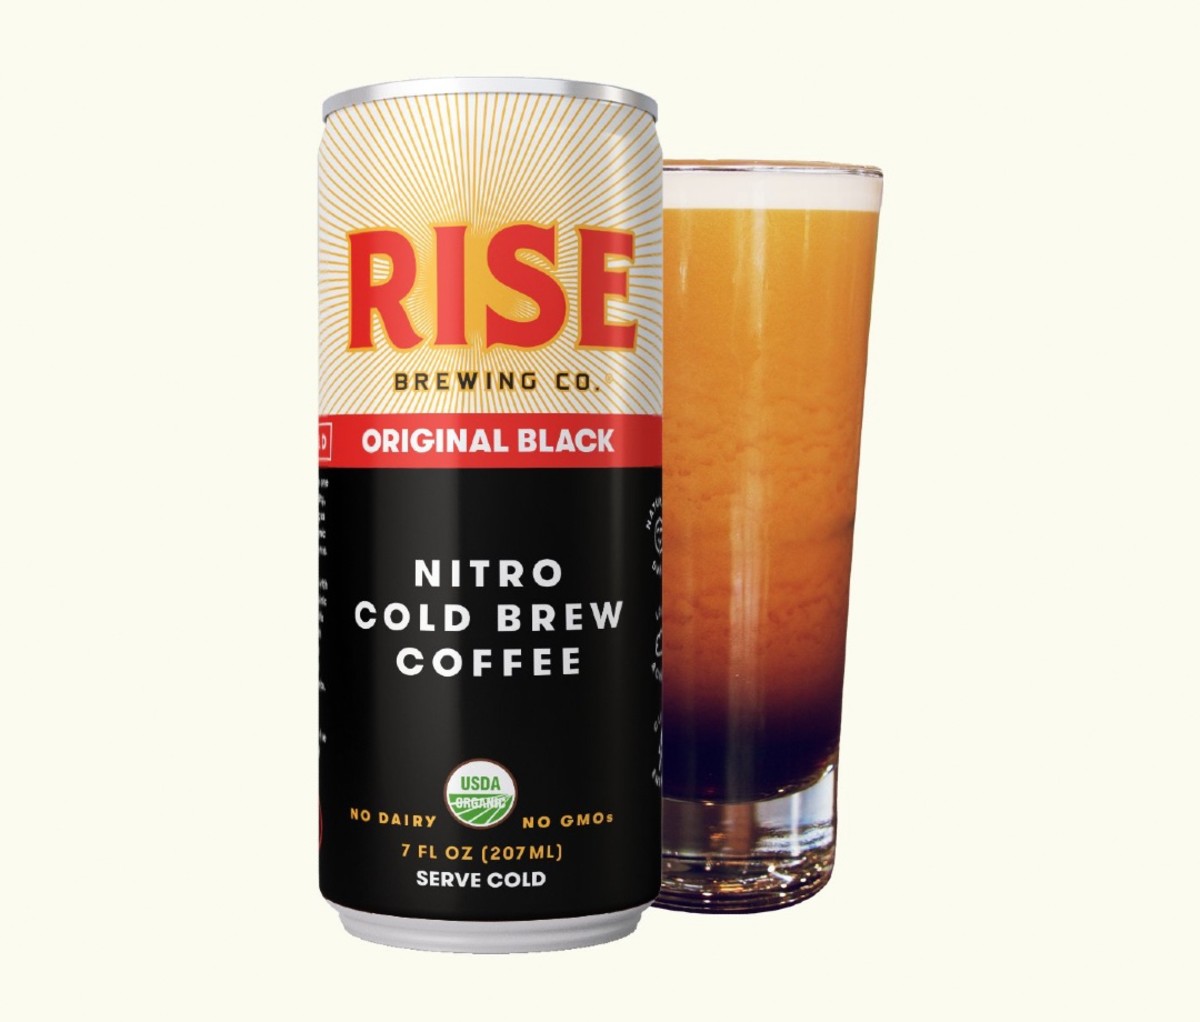 Rise Brewing Co. Original Black Nitro Cold Brew